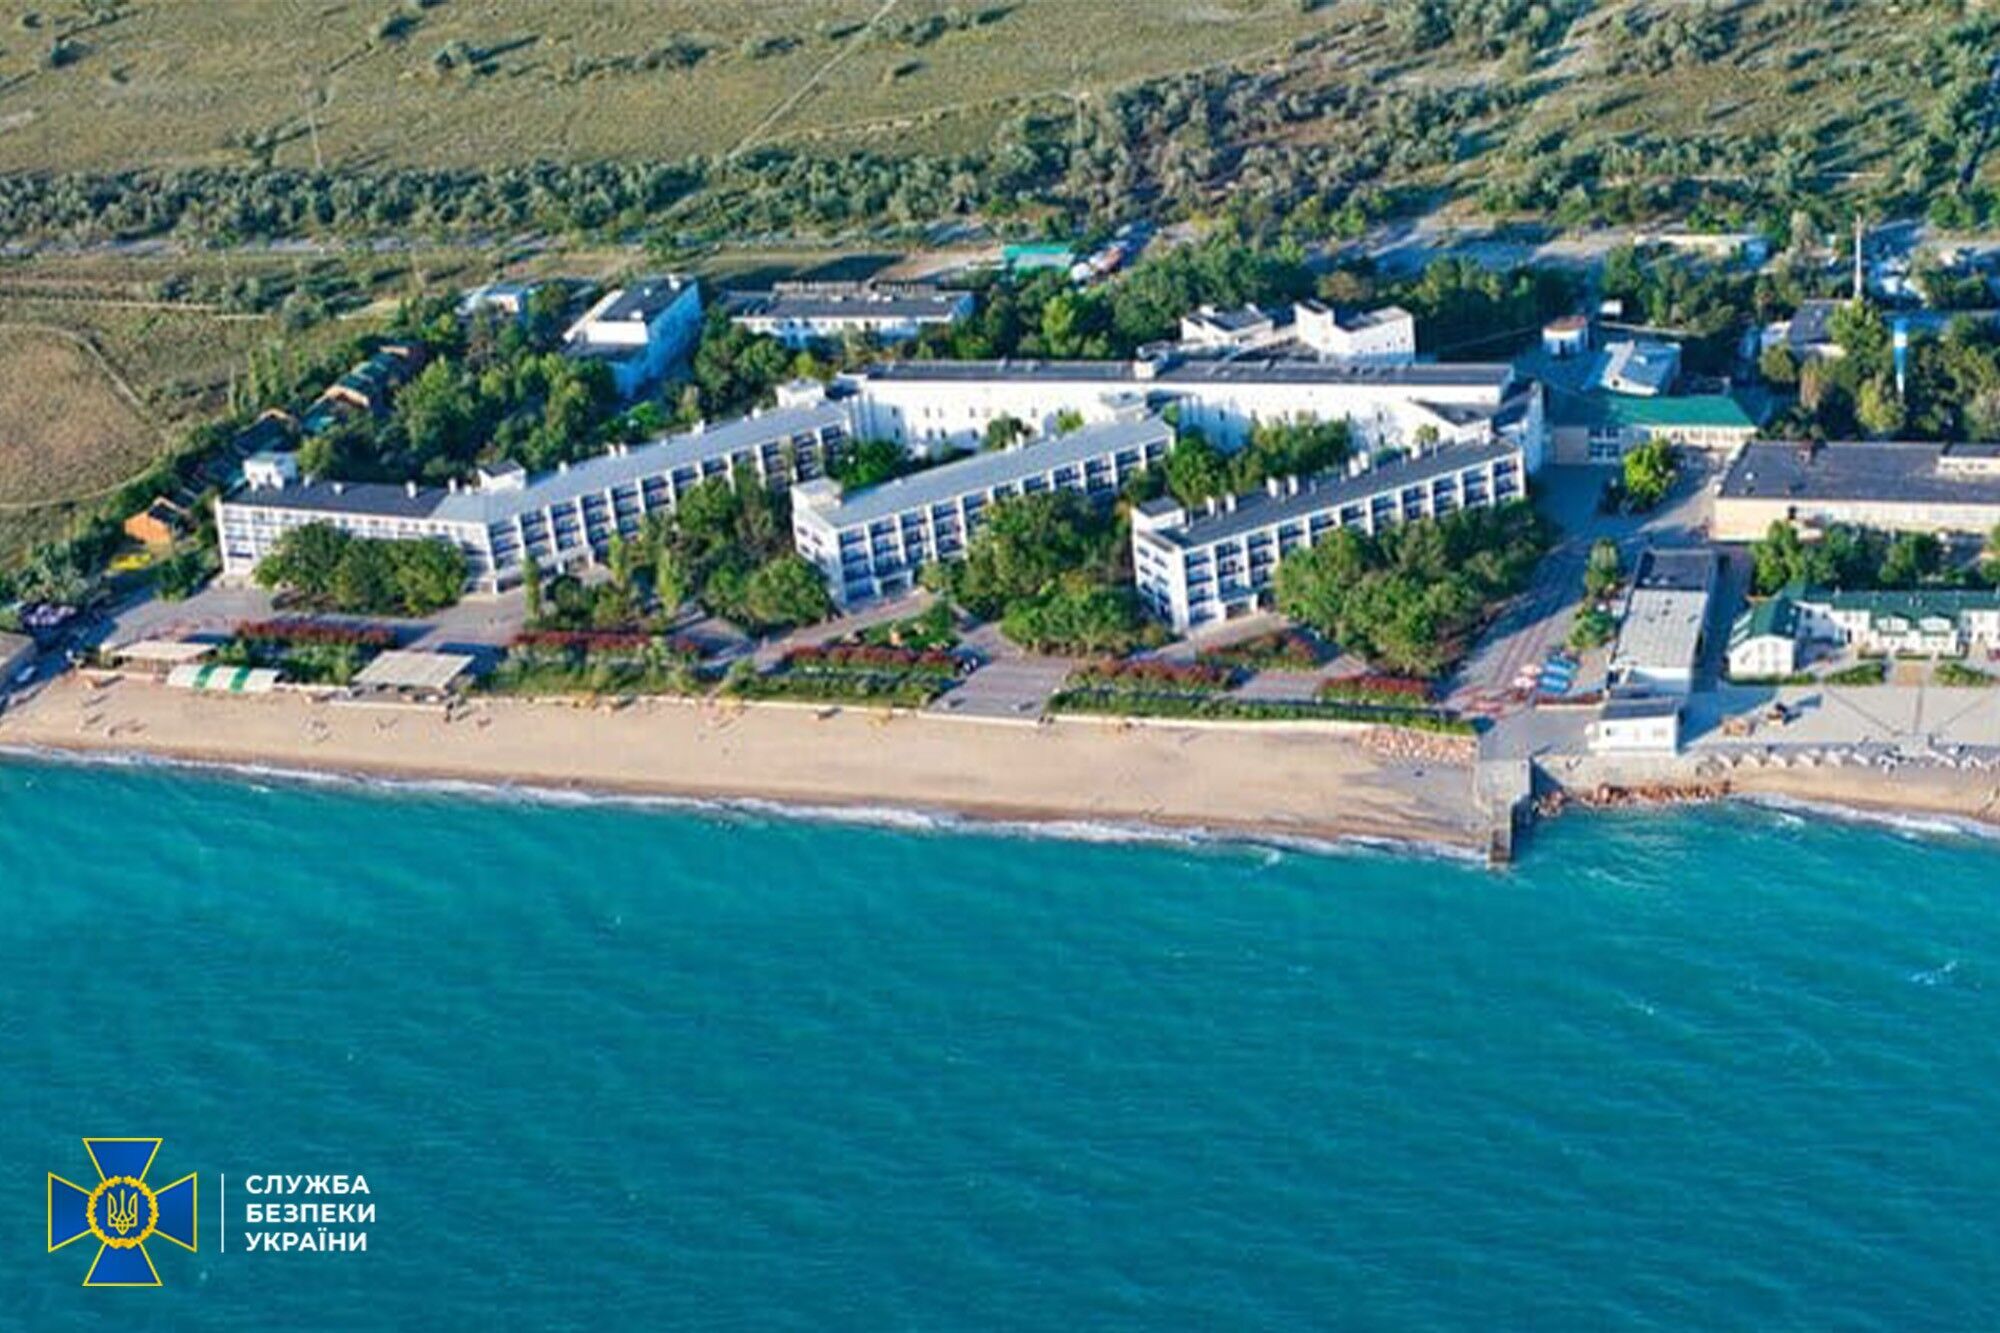 Санаторий расположен во временно оккупированном Крыму.